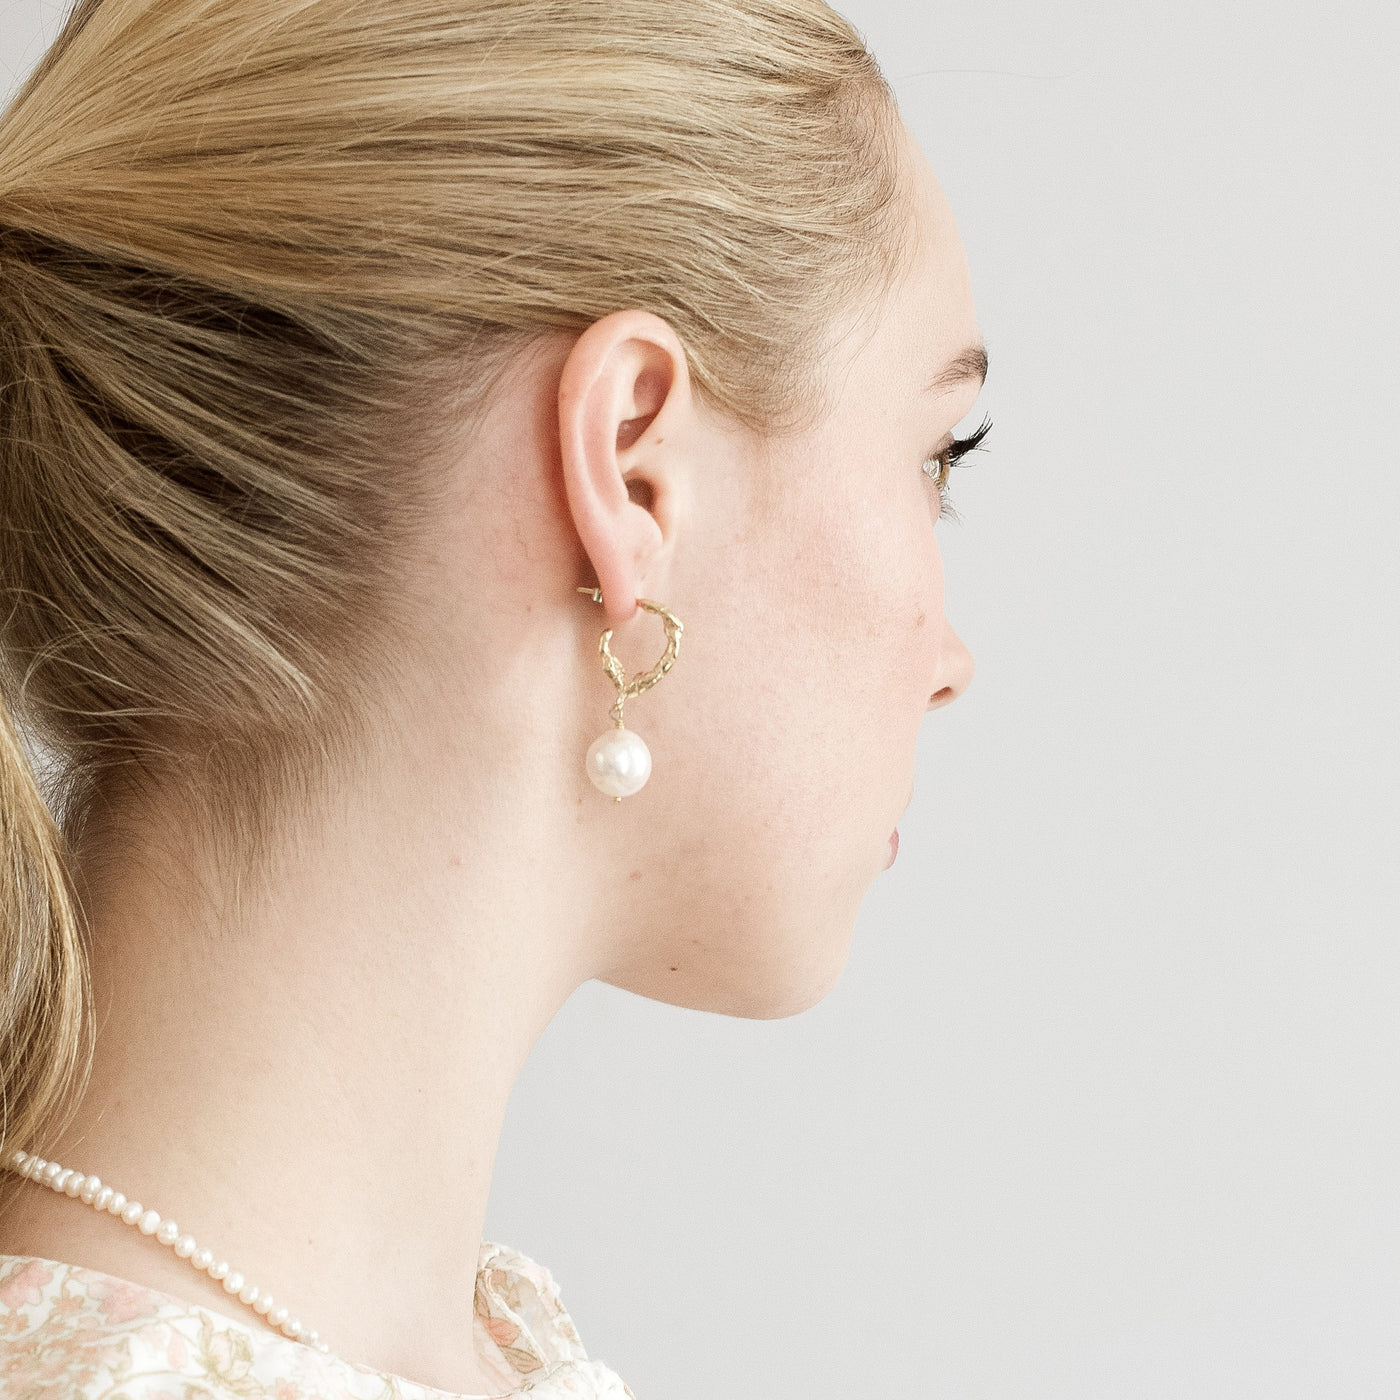 SORVIKA 585 GOLD (14k) // Hoop earrings with baroque pearl